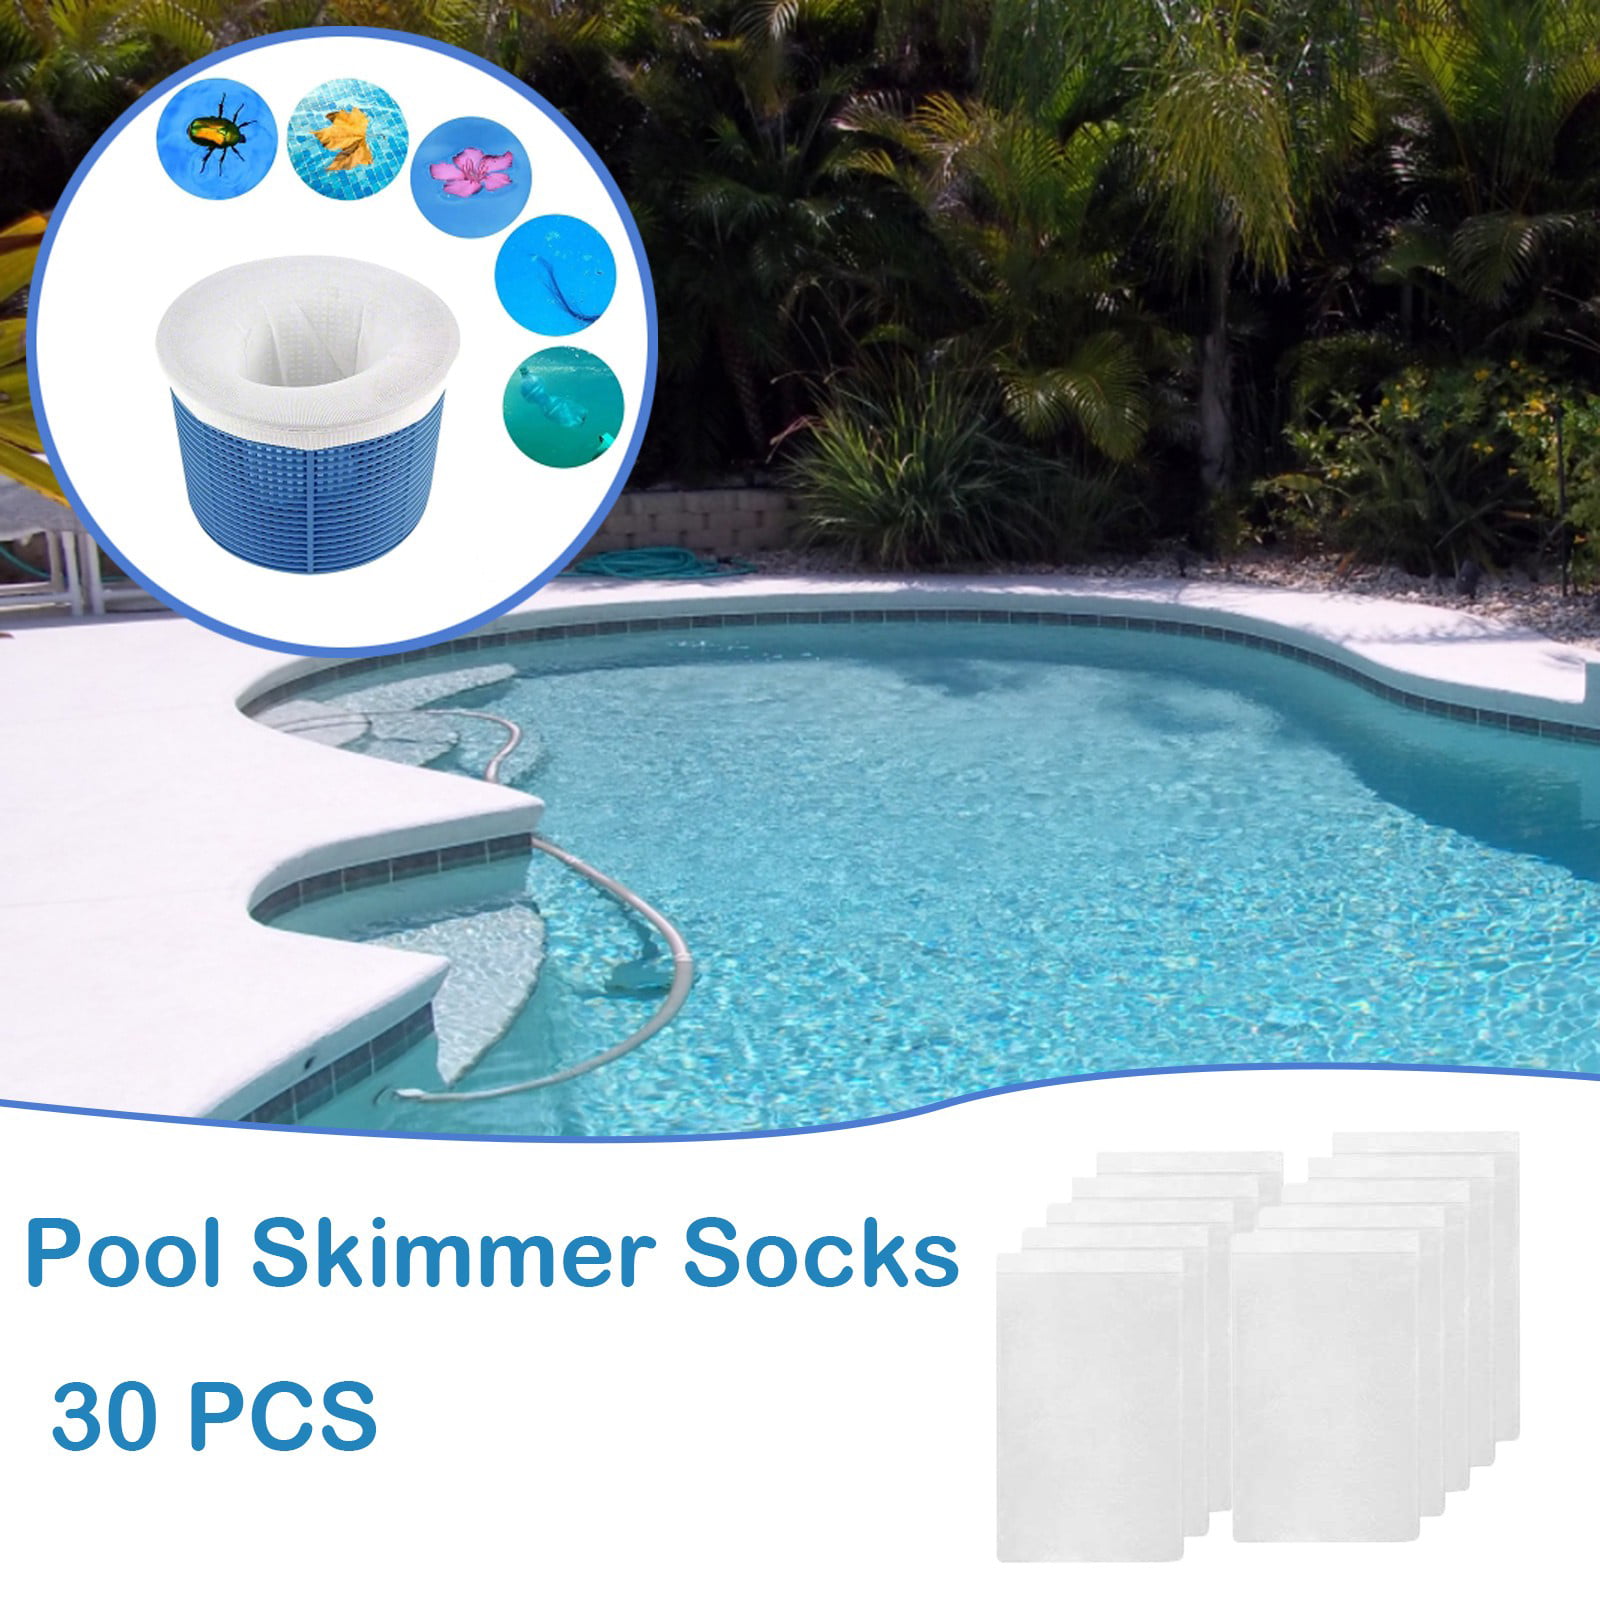 10pcs Pool Skimmer Large Premium Filter Saver Socks Ultrafine Mesh Material NEW 